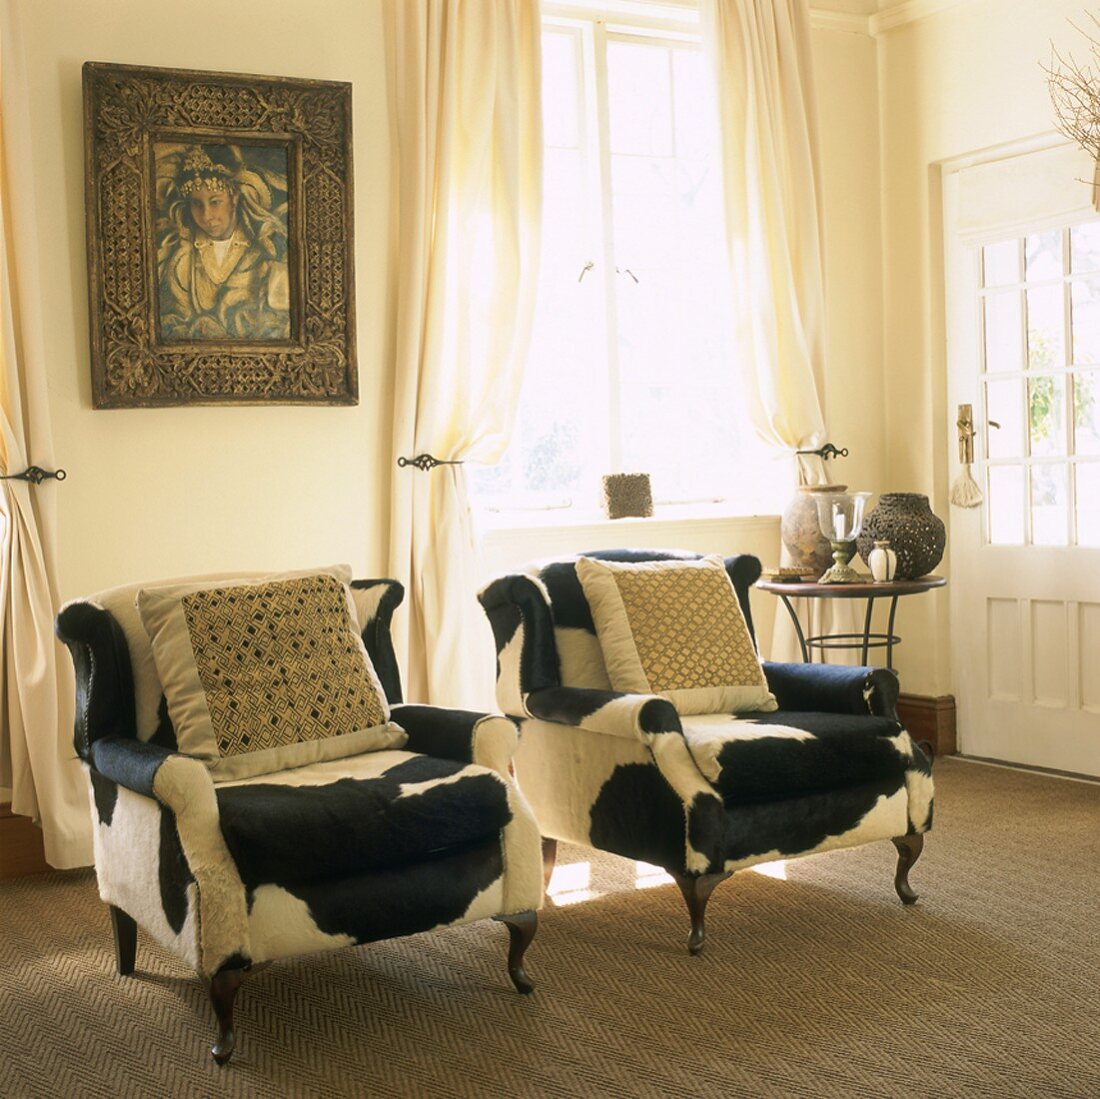 Zwei mit Kuhfell überzogene, antike Sessel und ein Gemälde in einem hellen Wohnraum